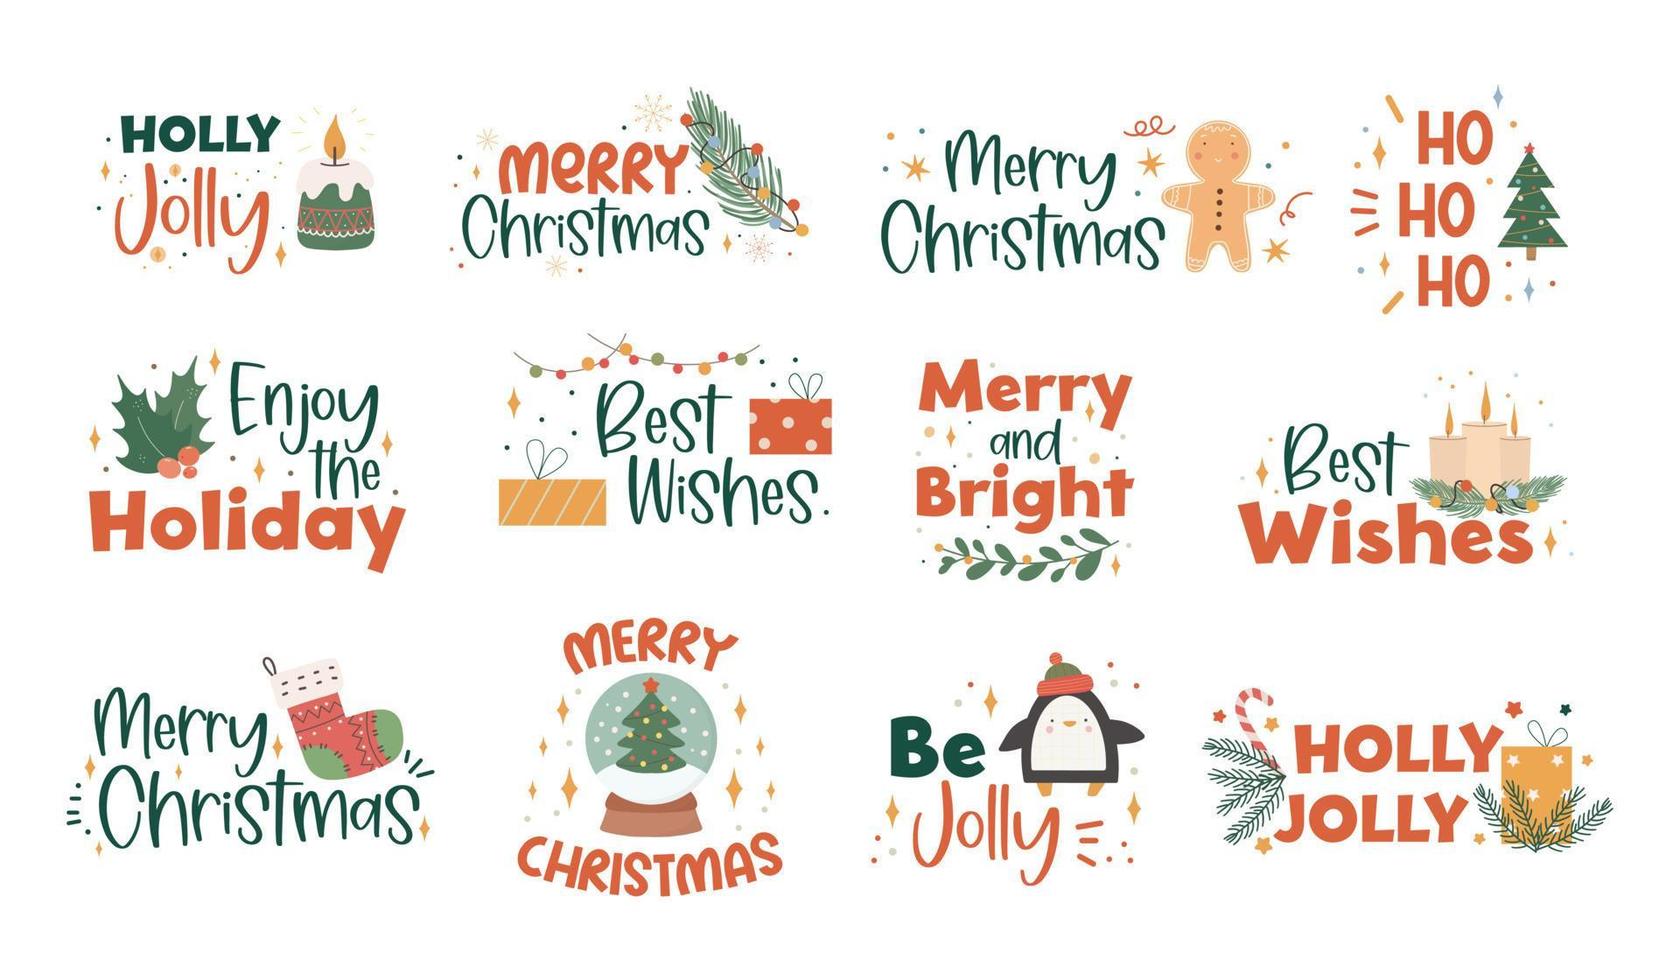 colección de letras navideñas manuscritas con decoraciones navideñas dibujadas a mano: hojas de acebo, guirnaldas de luces, velas, calcetines de punto y regalos. frases coloridas festivas. vector